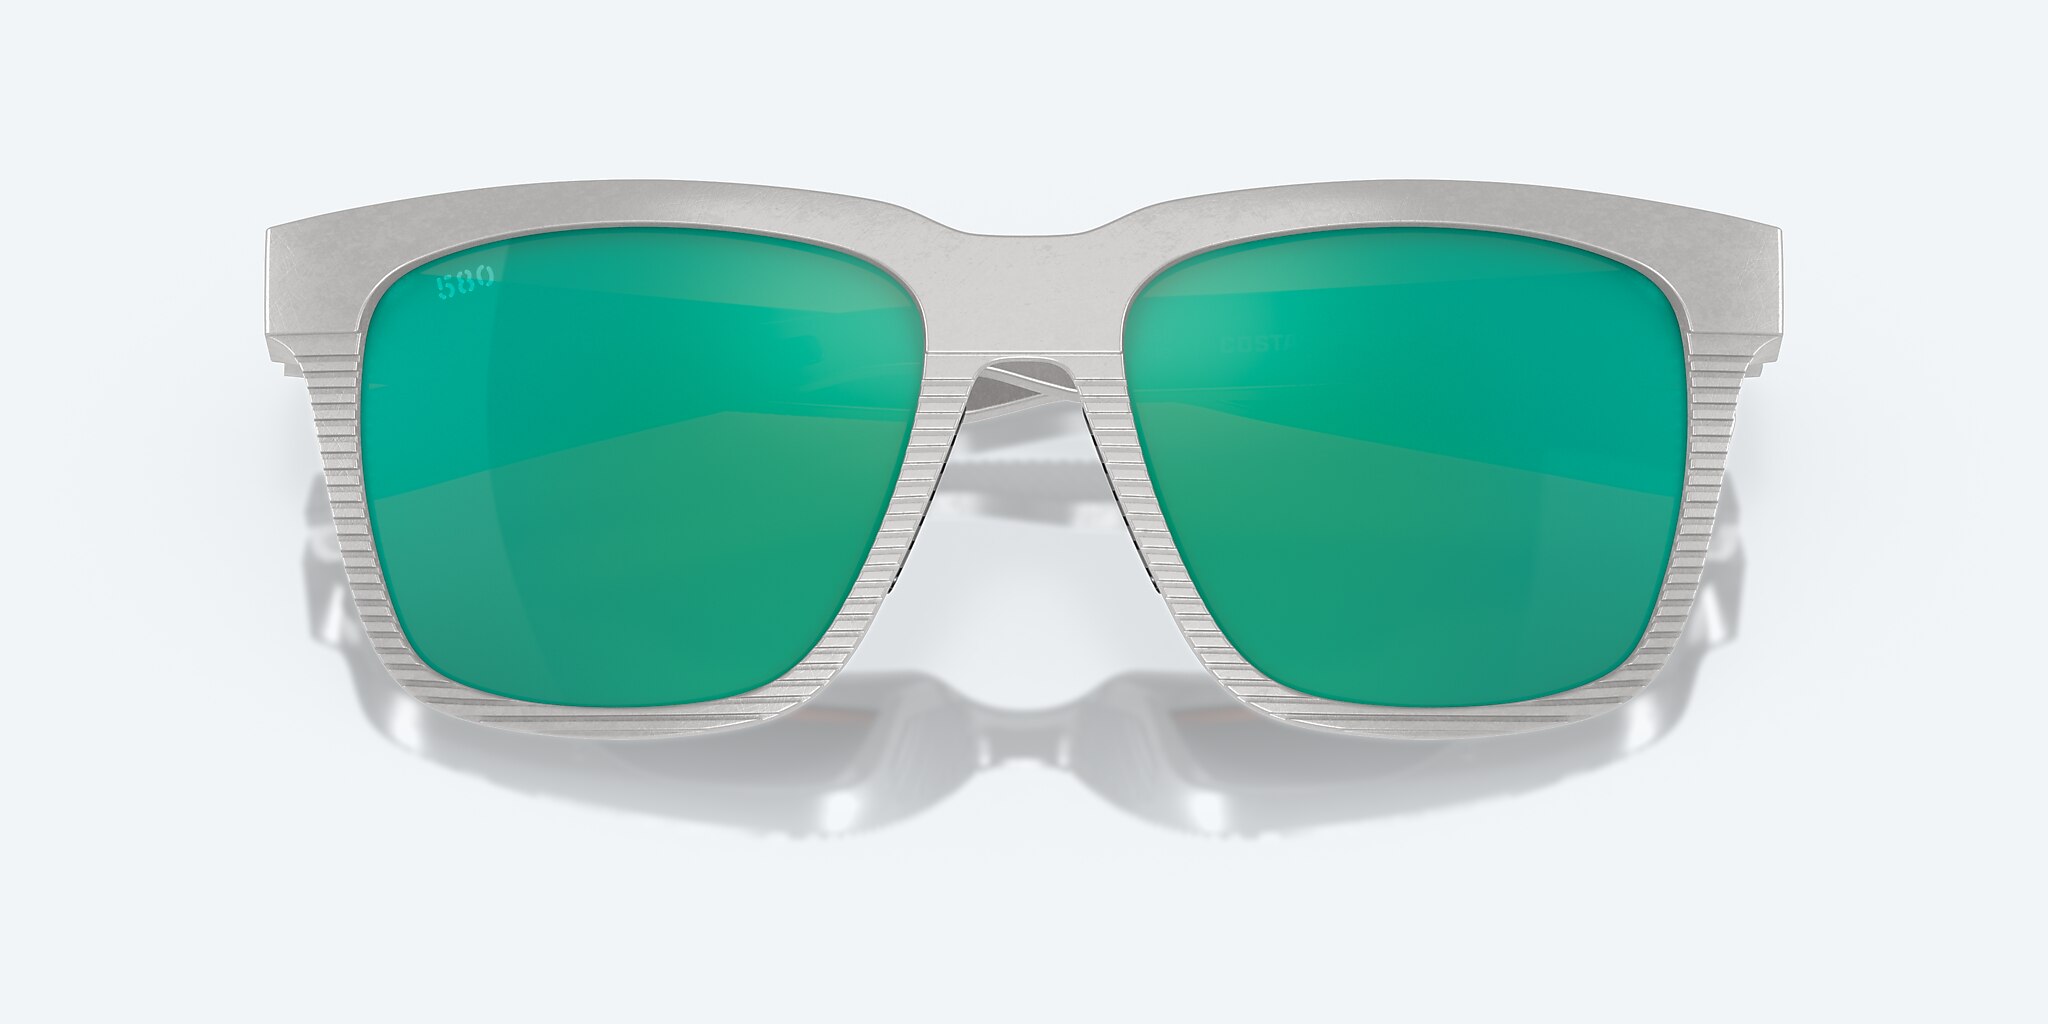 Costa Del Mar 6S9029 PESCADOR Sunglasses 902908 01G NET LIGHT GRAY /w Copper Green Mirror 580g Green